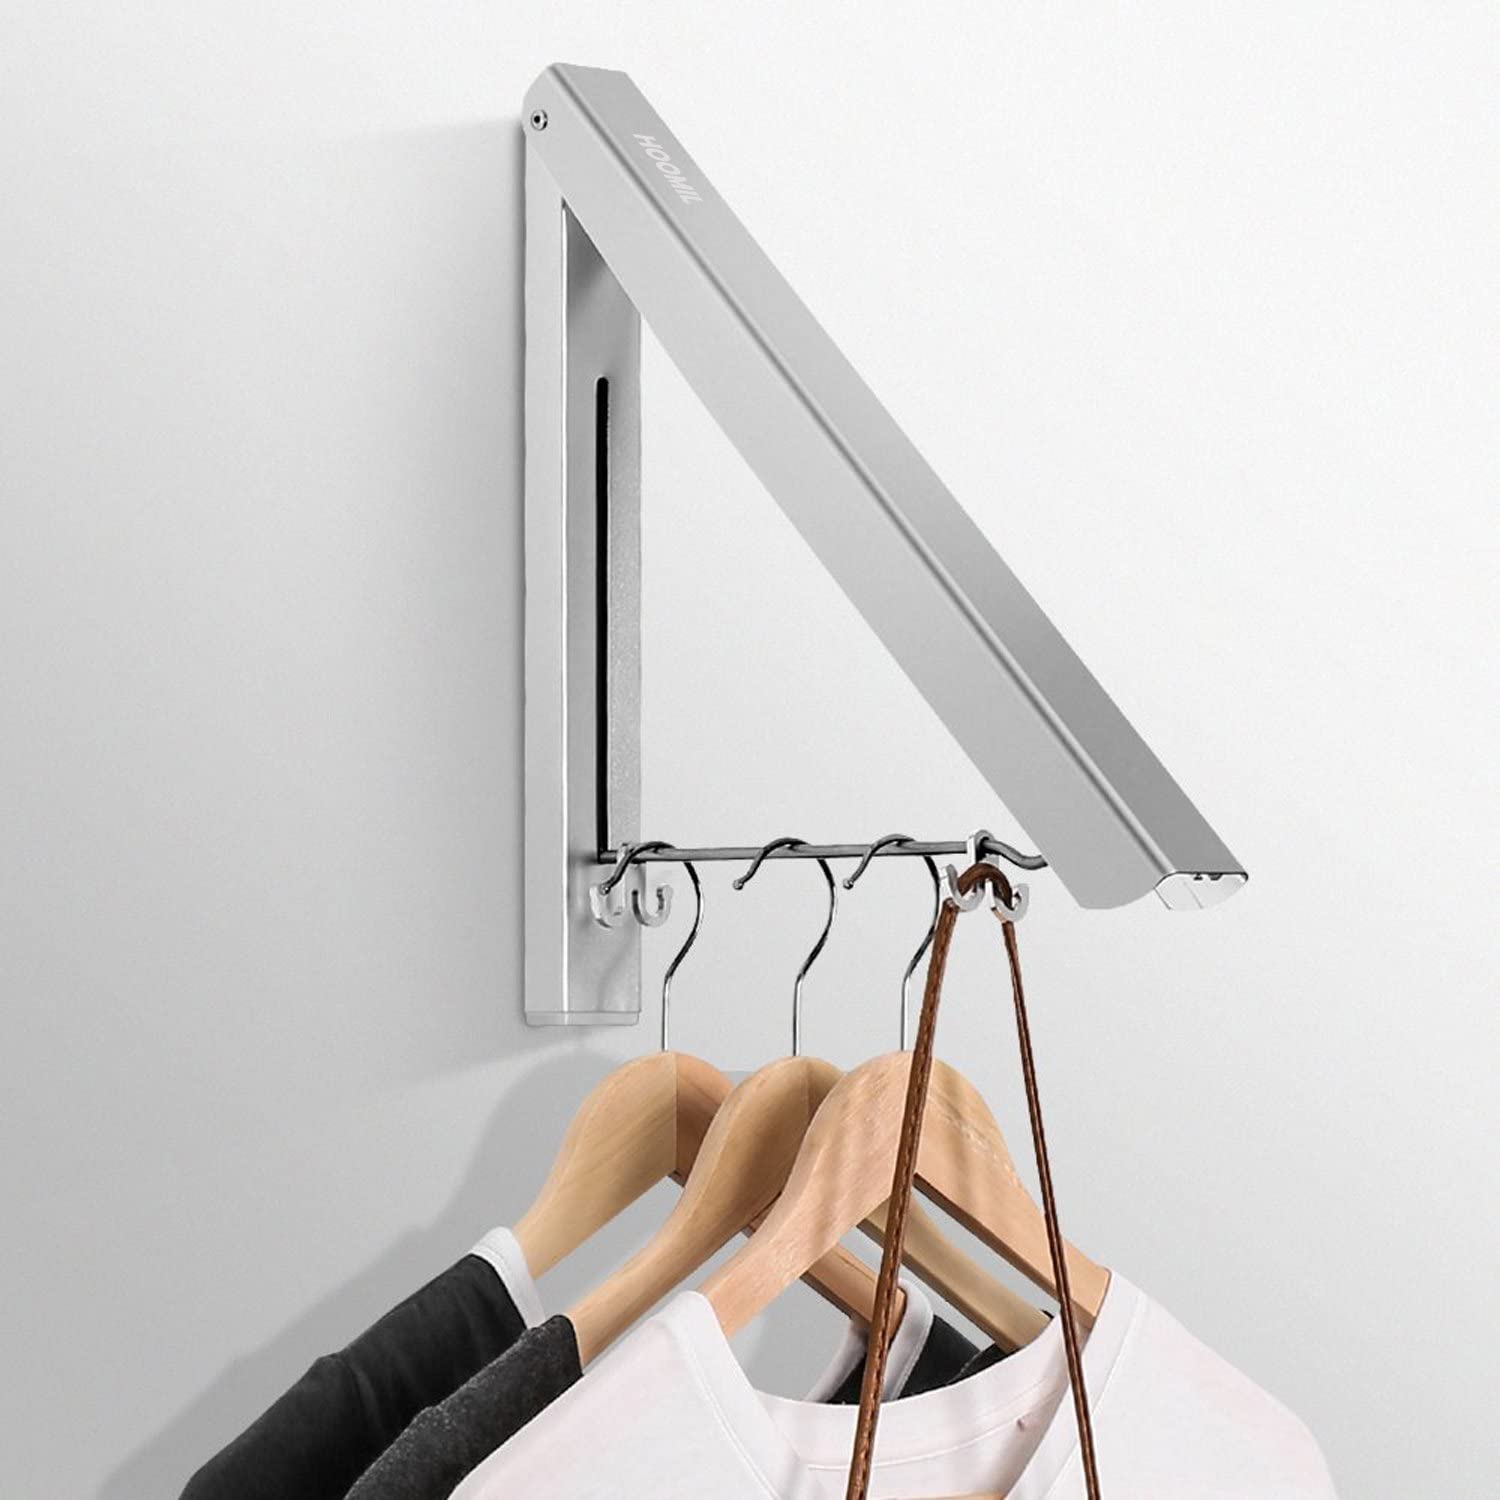 Thiết kế hình tam giác sáng tạo giúp chiếc móc treo tận dụng bất cứ không gian của khoảng tường trống trong góc phòng để lưu trữ quần áo. Nó còn tích hợp 2 chiếc móc dành riêng cho những phụ kiện như túi xách hay thắt lưng nữa đấy.